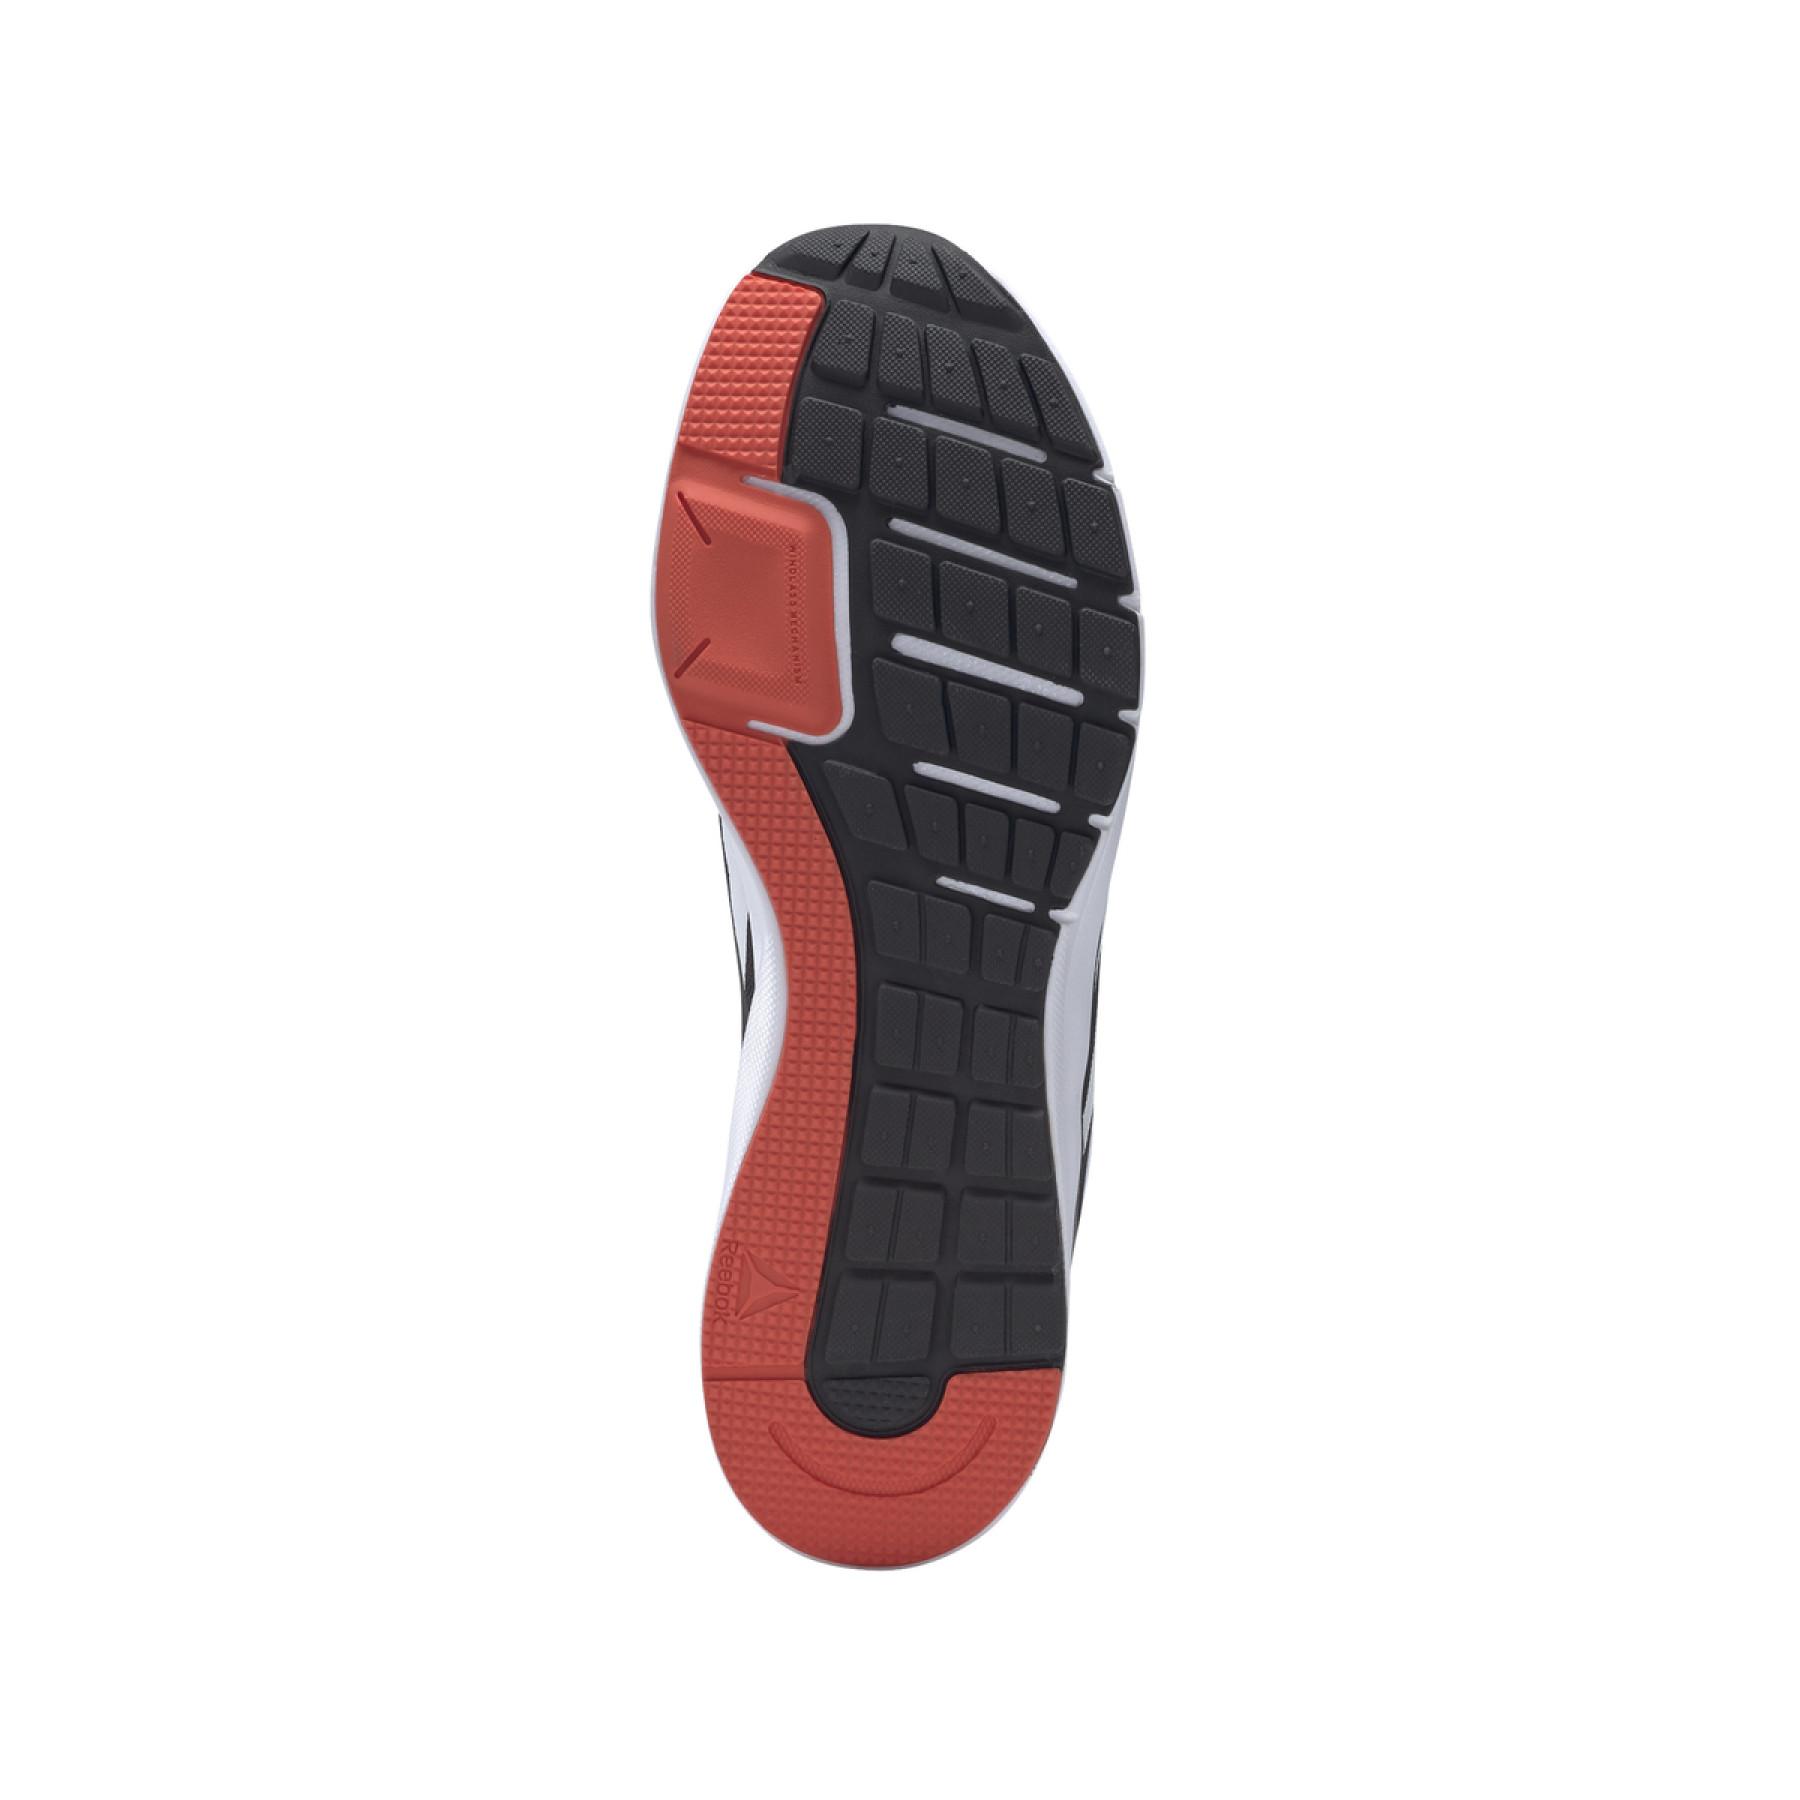 Schuhe Reebok Runner 4.0